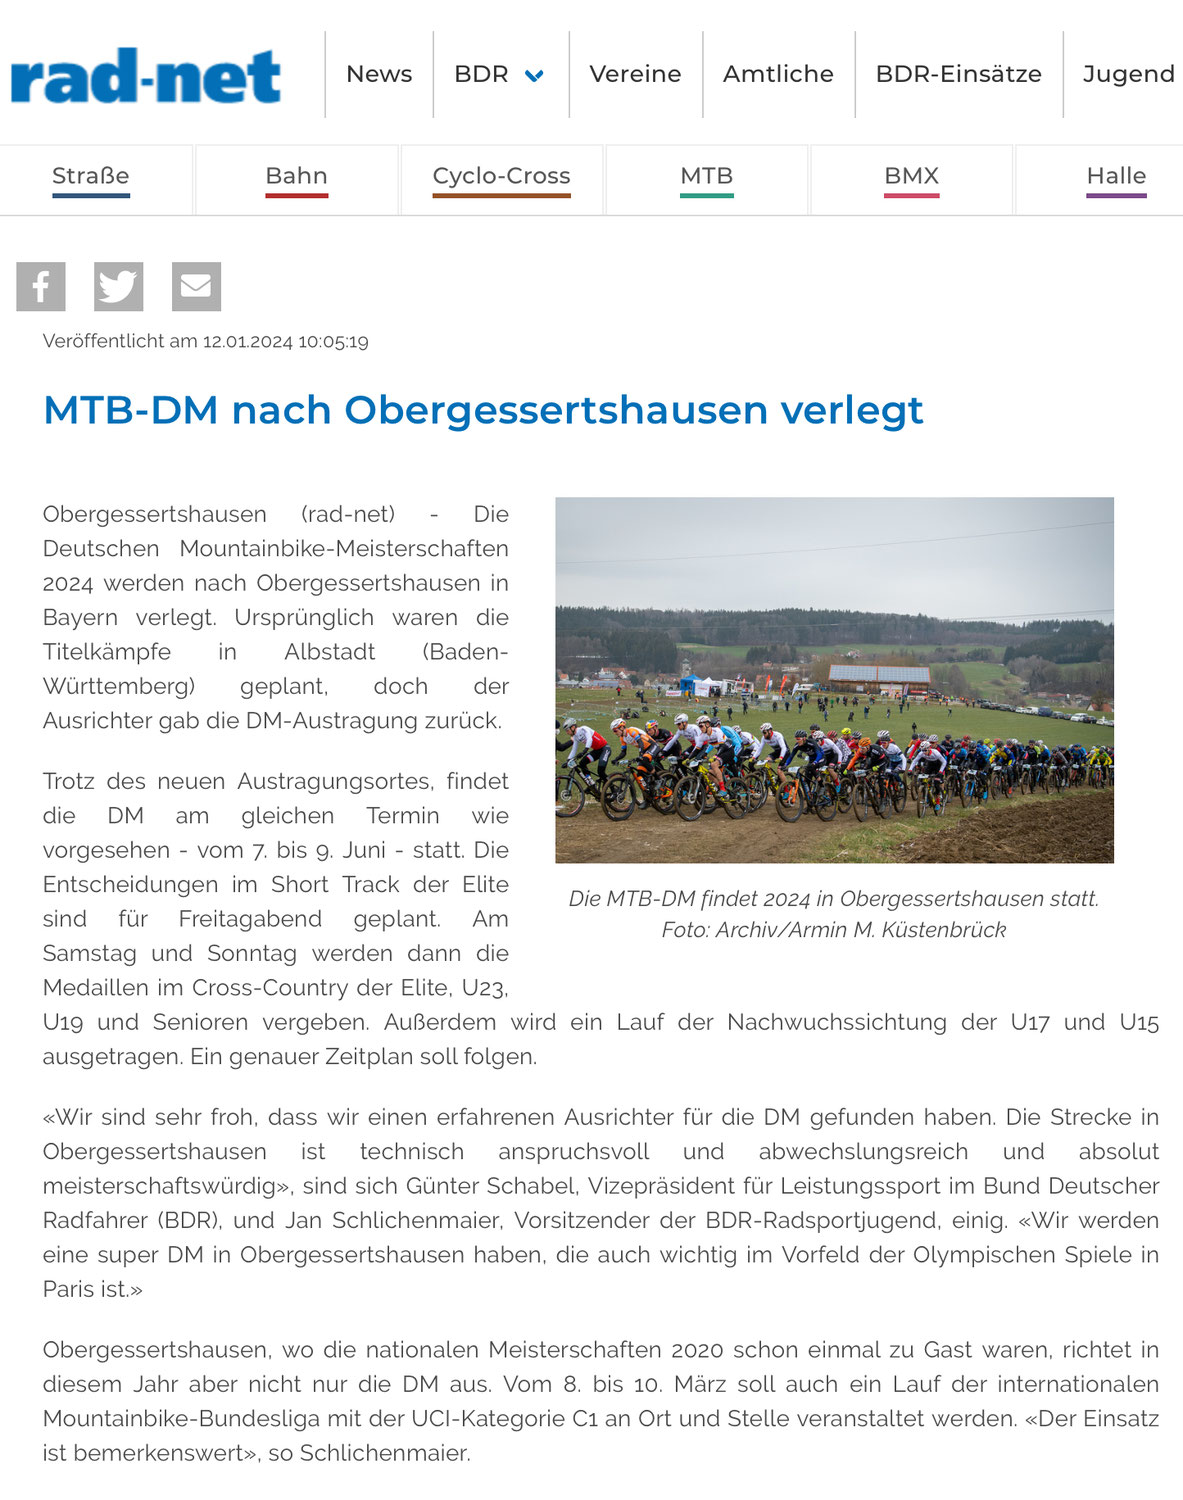 Deutsche Meisterschaft 2024 wird nach Obergessertshausen verlegt